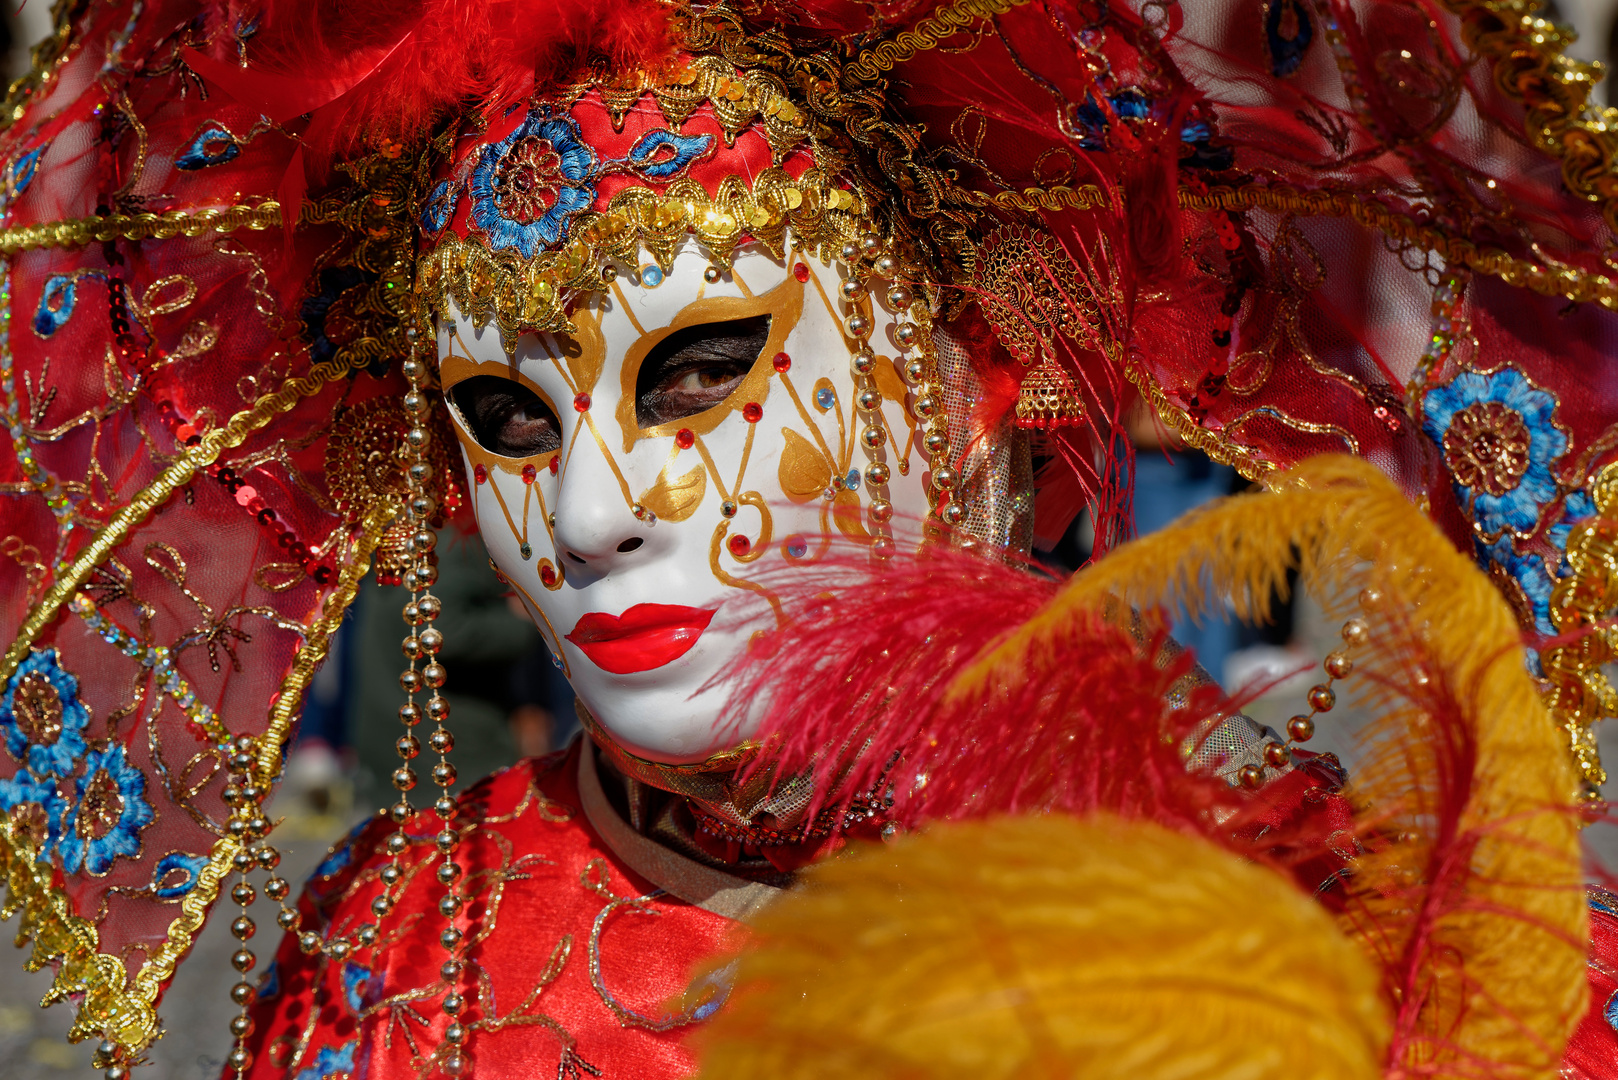 Der rote Drache, carnevale di venezia, Karneval von Venedig/Italien